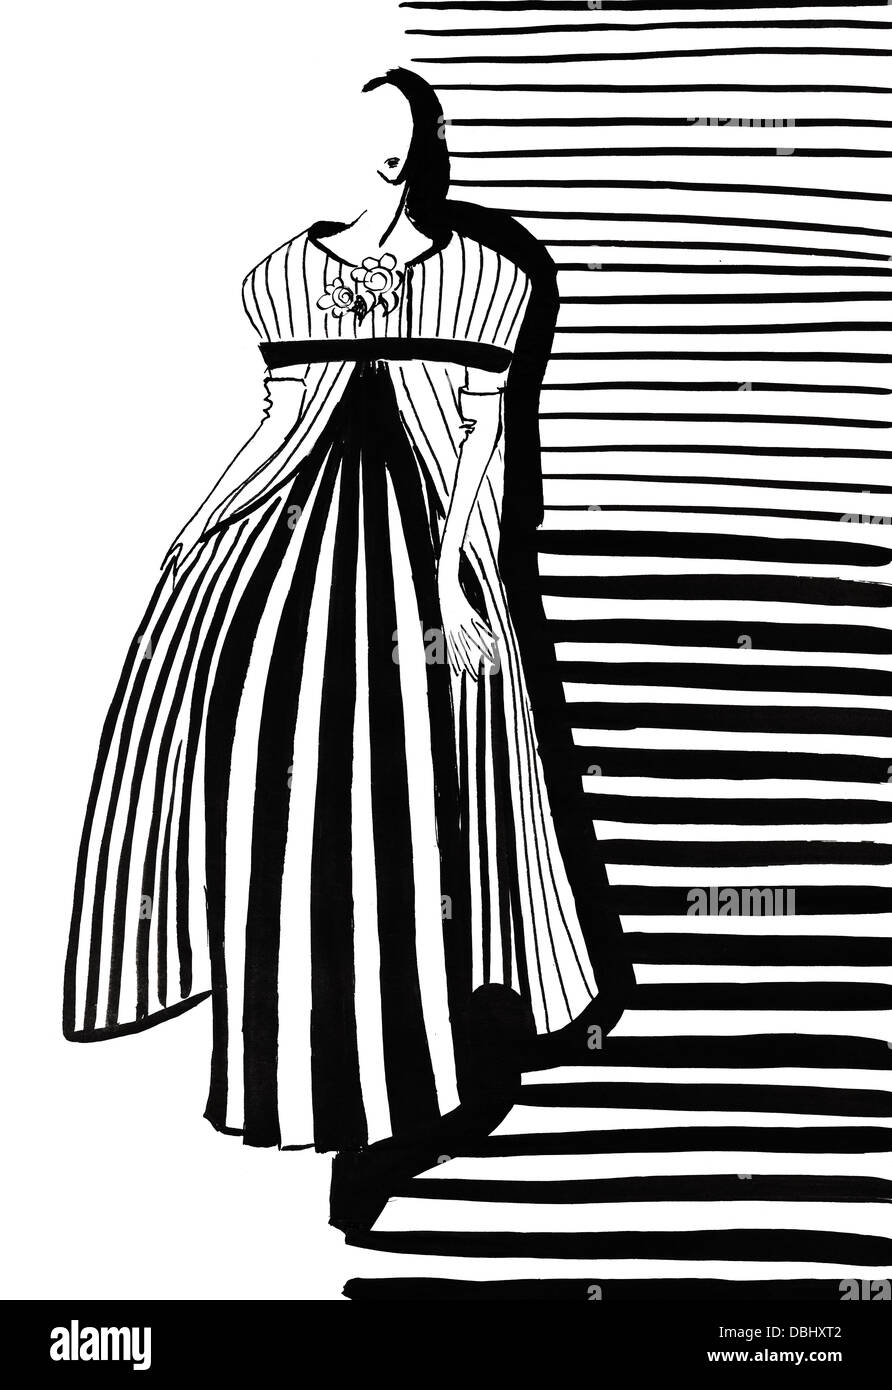 La mode du 20ème siècle - Femme au manteau gris et robe avec des plis en 60e années Banque D'Images